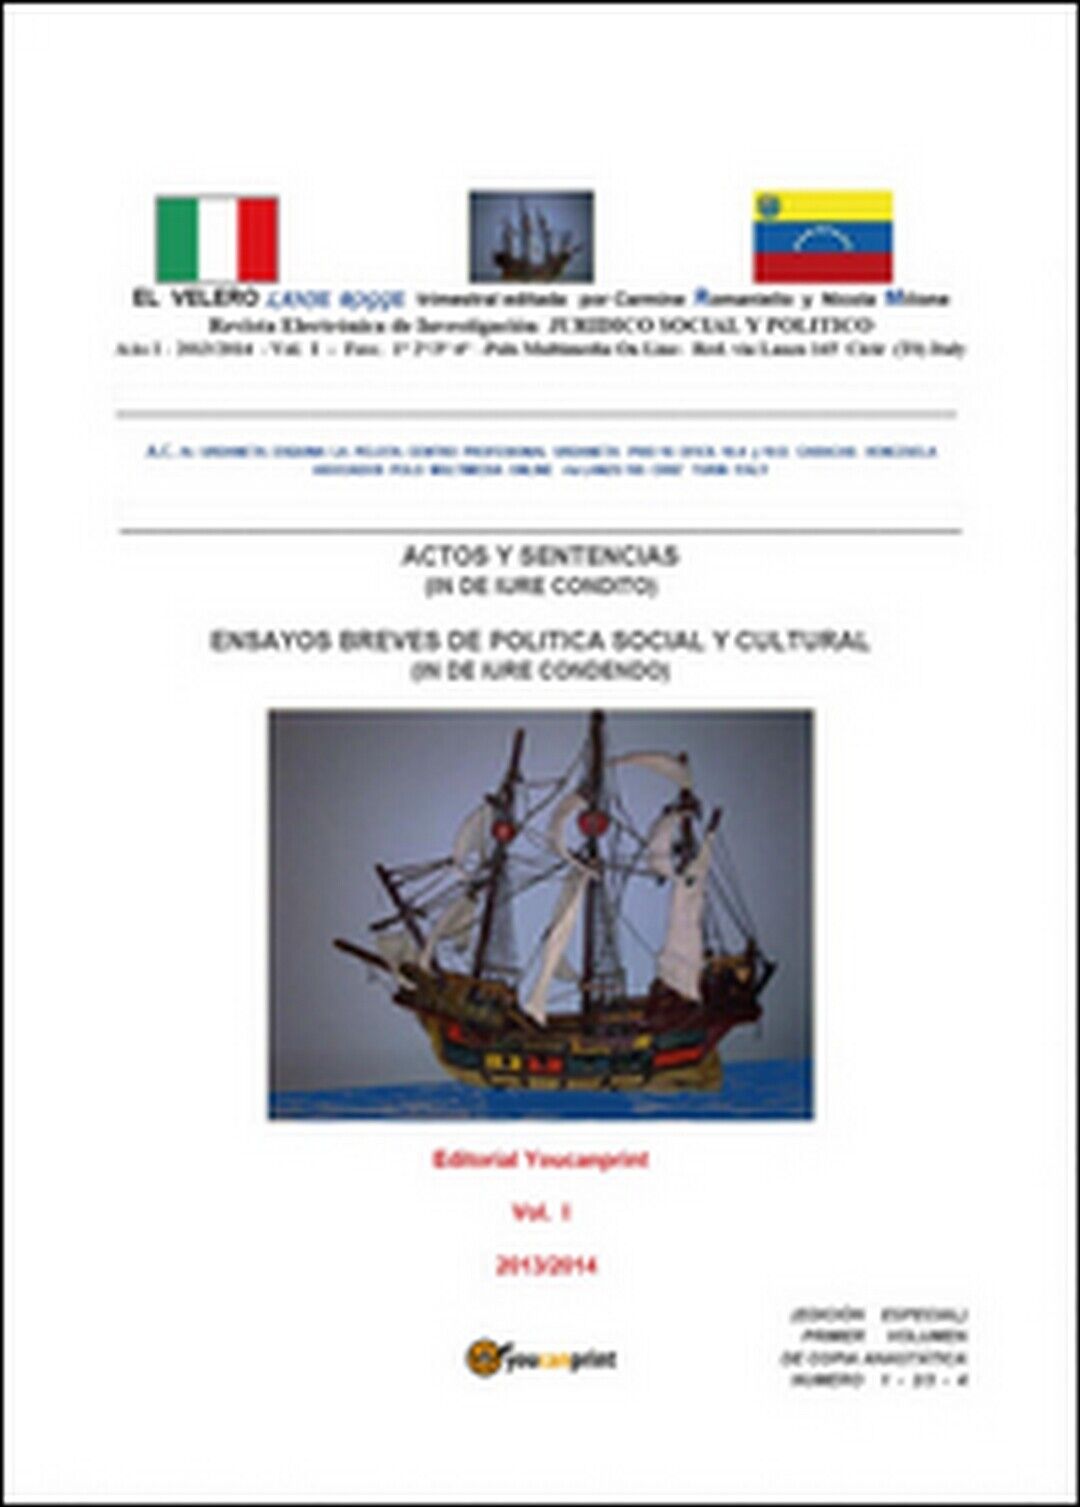 Velero lanse rogge (El) Vol.1,  di Nicola Milione, Carmine Augusto Romaniello